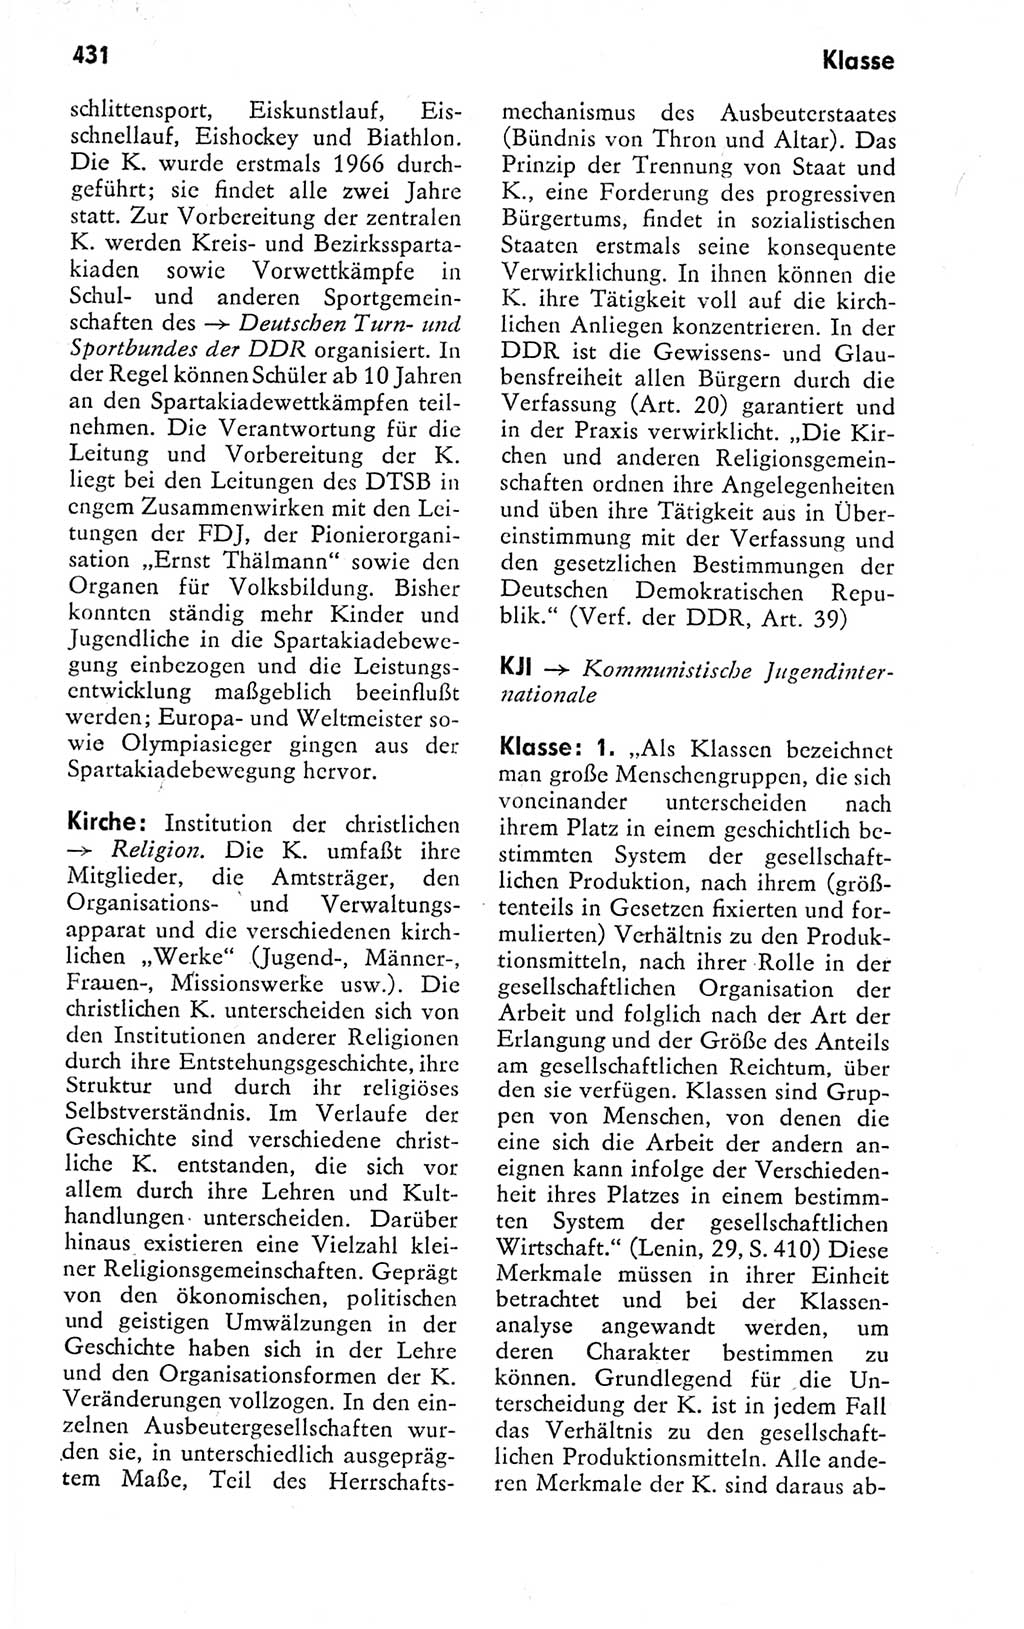 Kleines politisches Wörterbuch [Deutsche Demokratische Republik (DDR)] 1978, Seite 431 (Kl. pol. Wb. DDR 1978, S. 431)